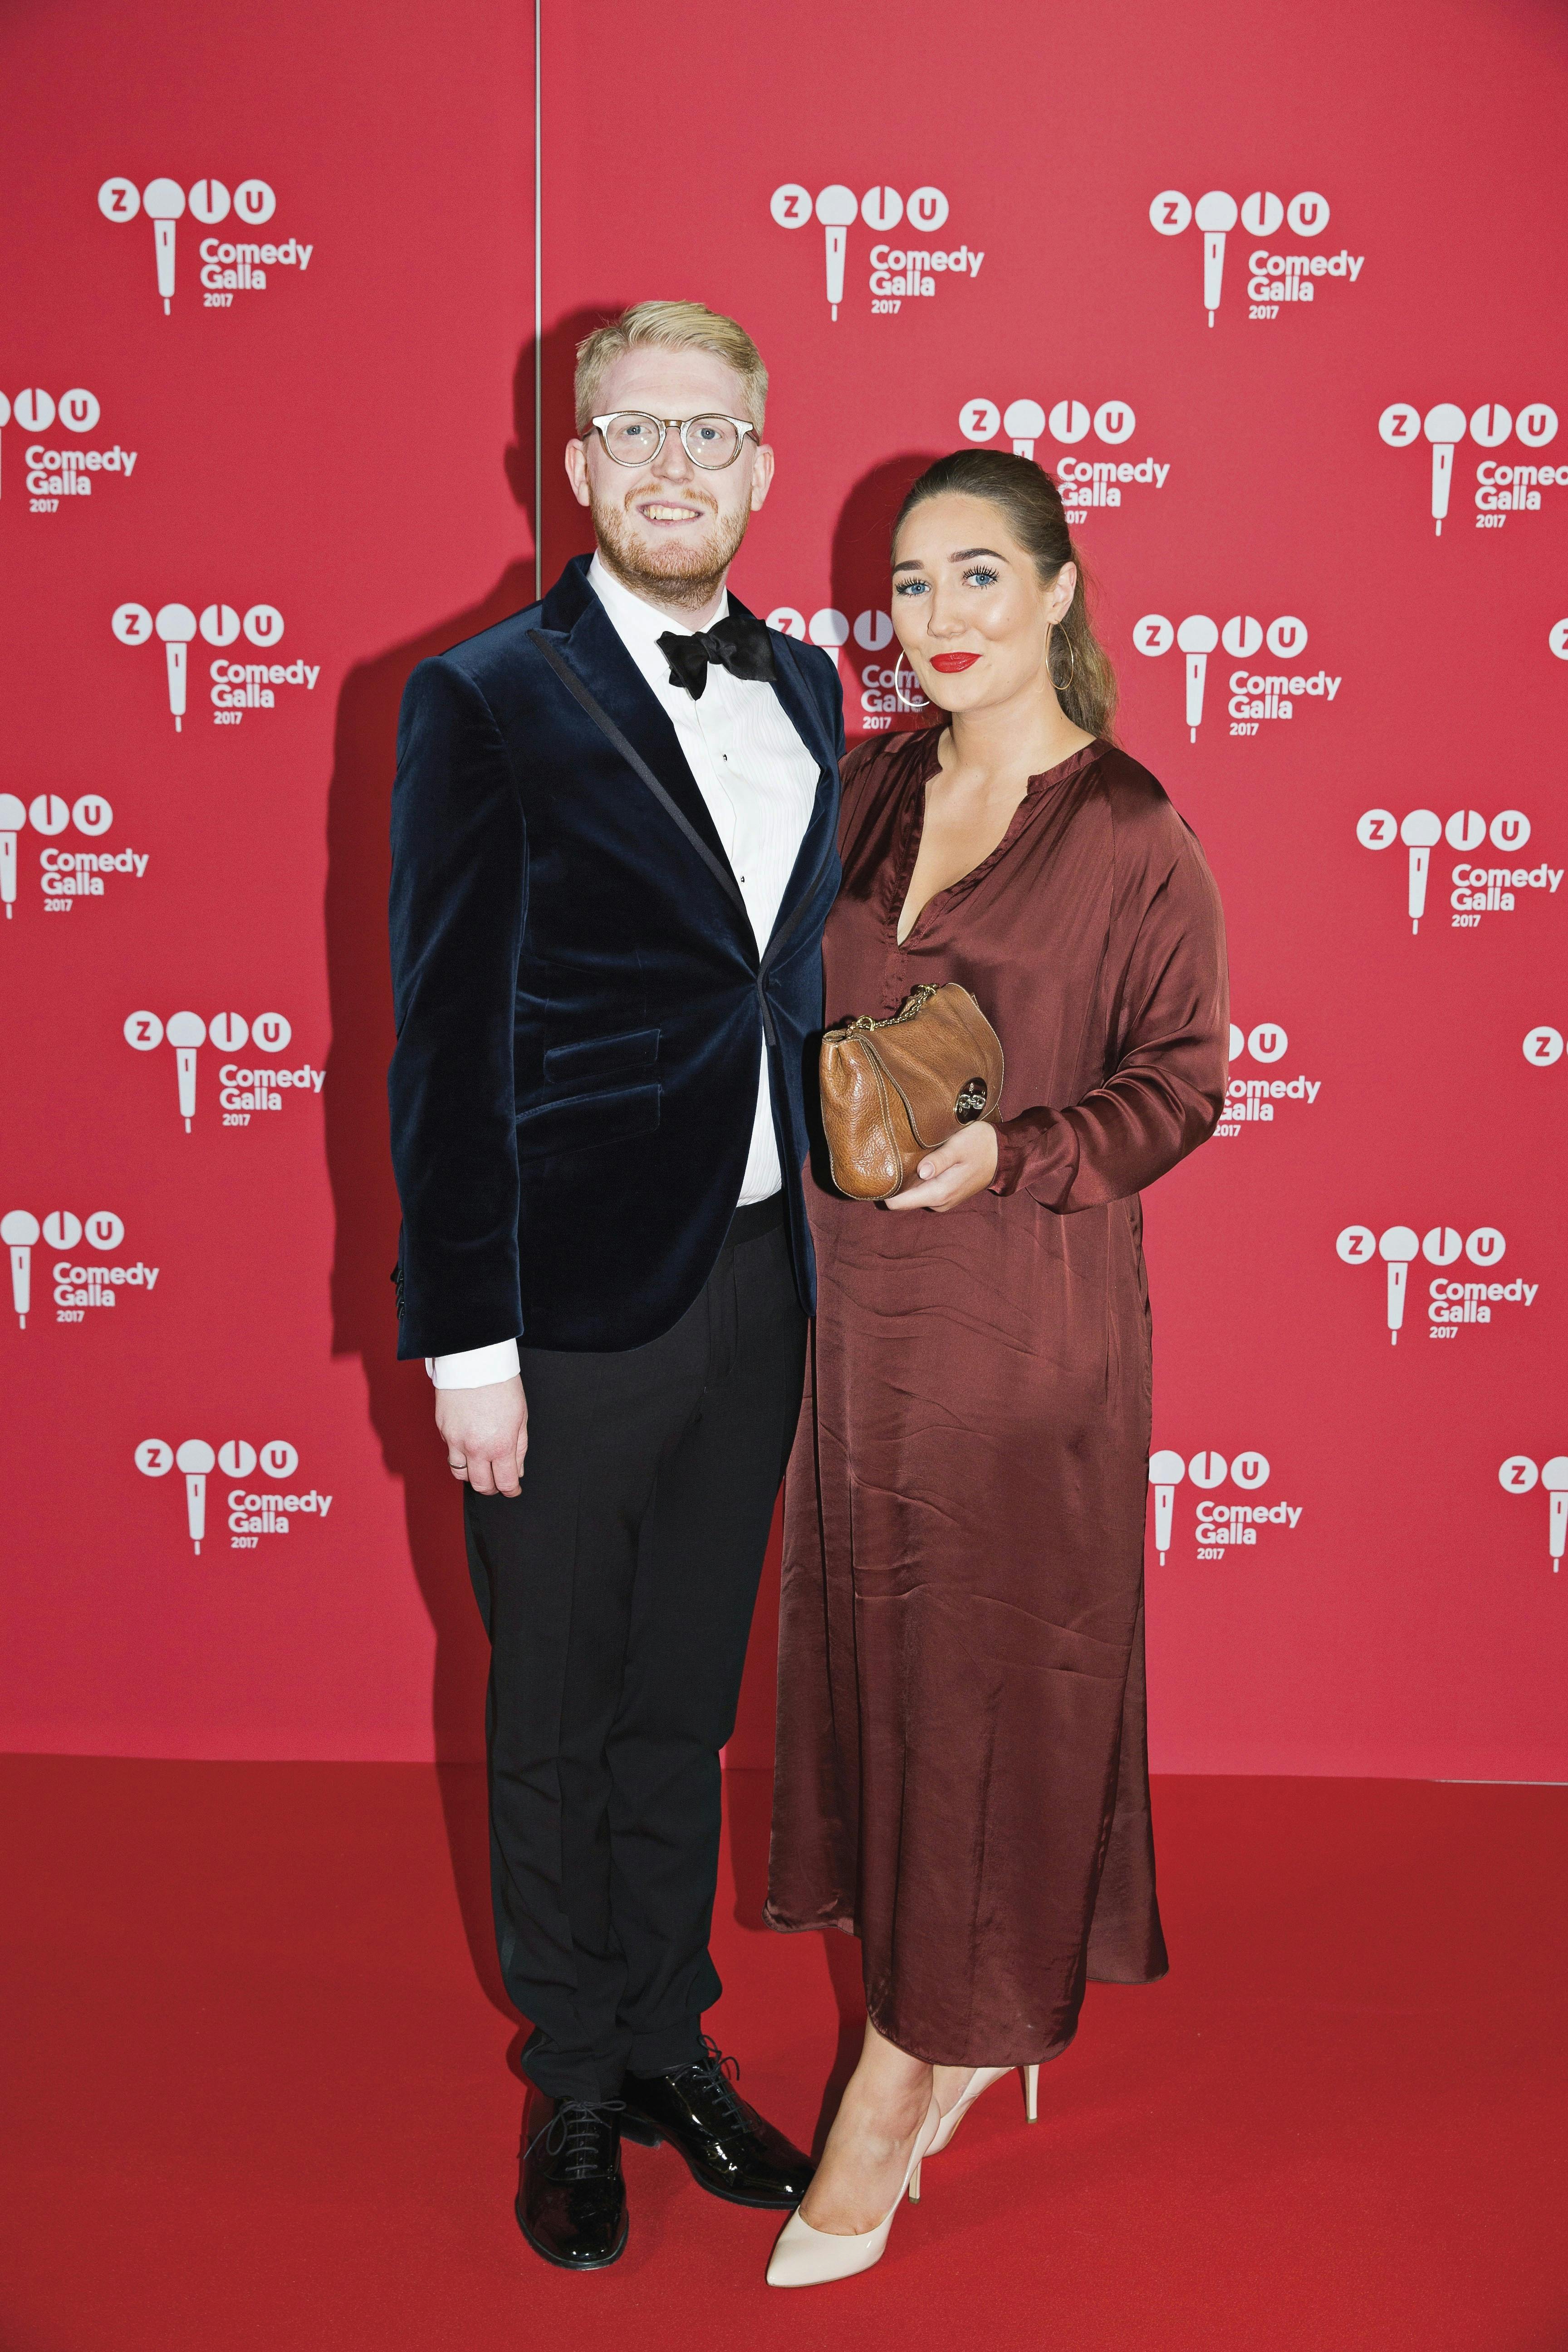 Nikolaj Stokholm og konen Isabella Stokholm til Zulu Comedy Galla 2020.
